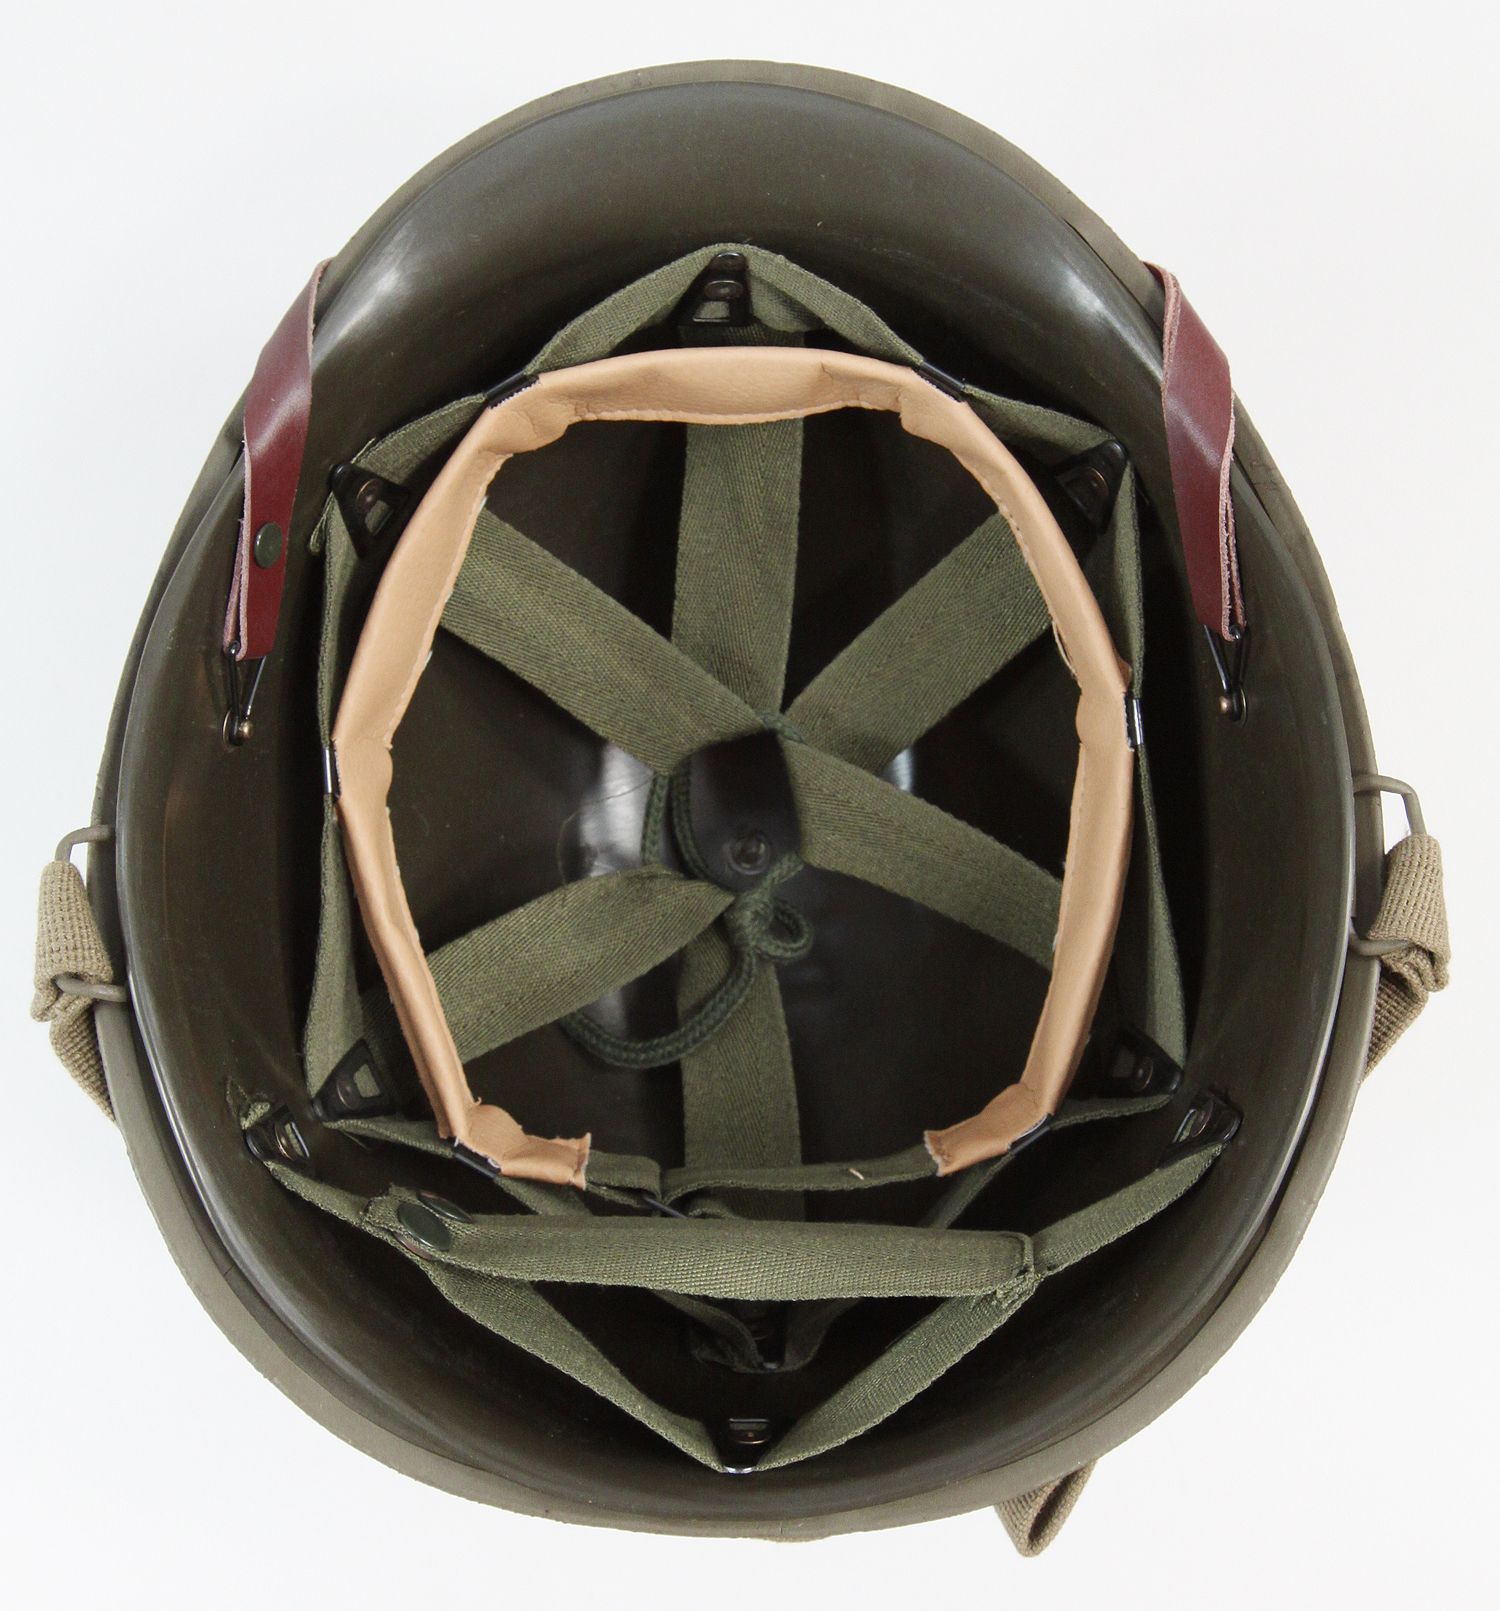 WW2 US Helmets For Sale, Buy WW2 US Helmets Online